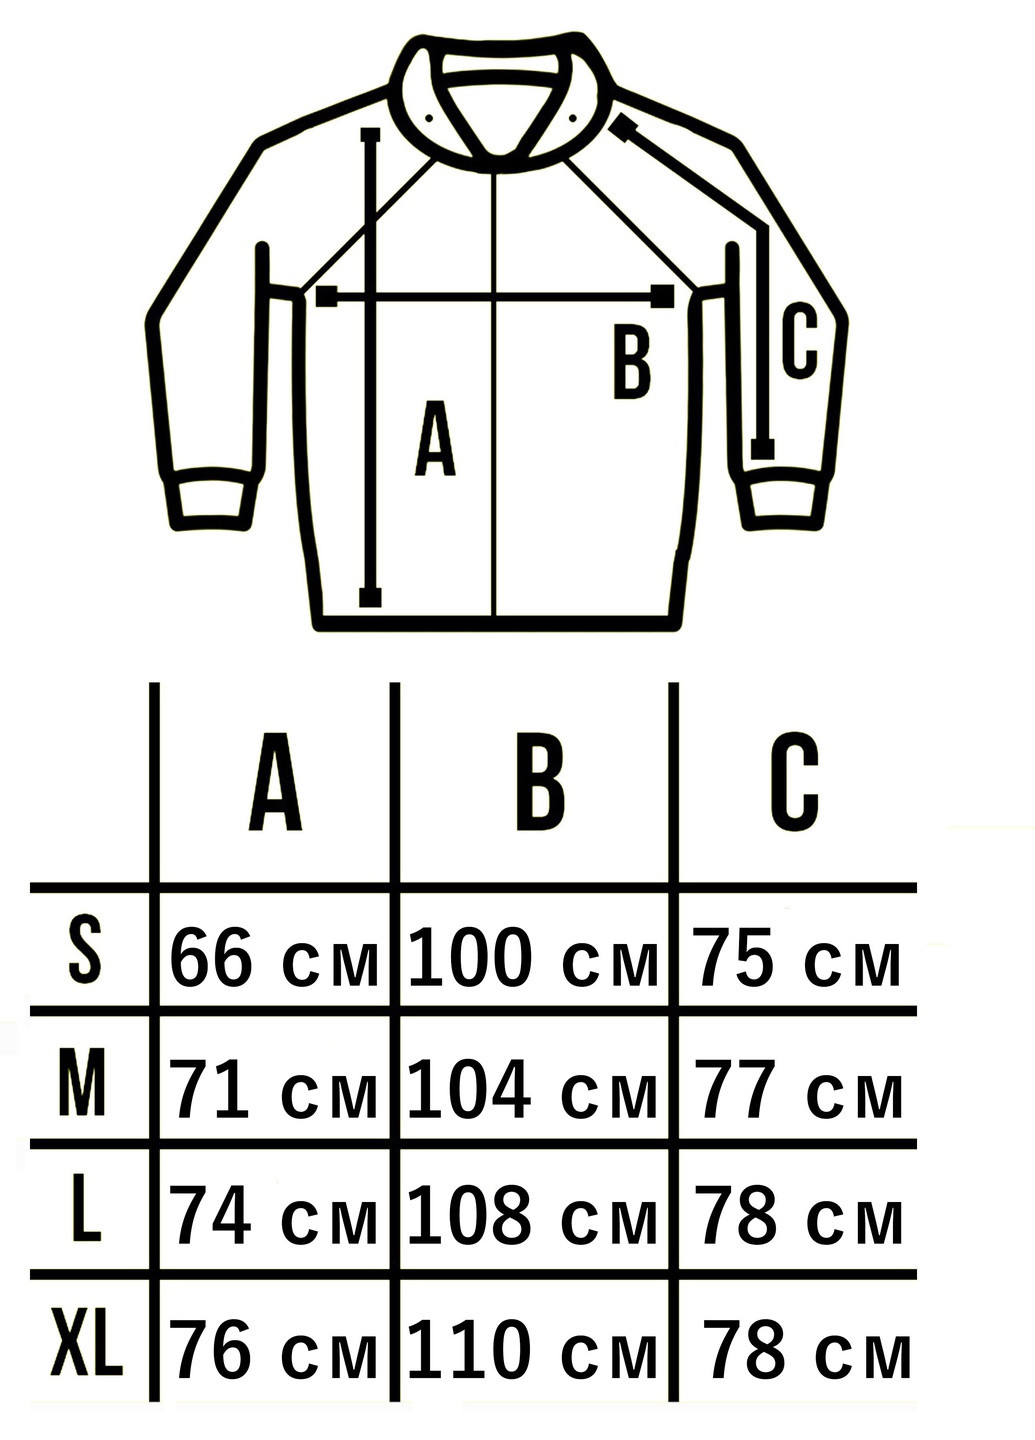 Графітова демісезонна куртка чоловіча protection soft shell графіт Custom Wear